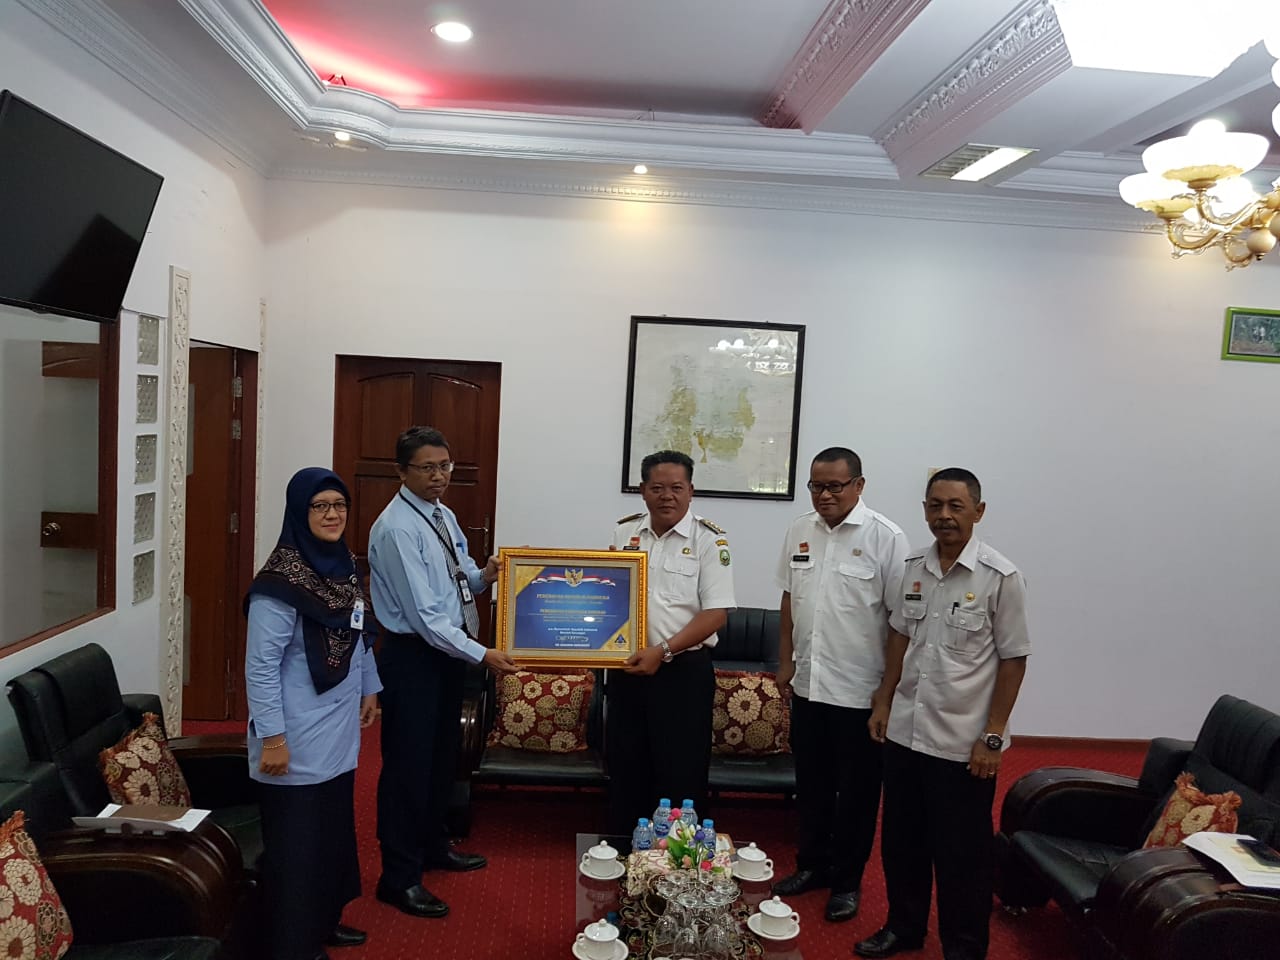 Foto-- Kepala KPPN Sanggau Bulus Lumban Gaol menyerahkan piagam WTP kepada Bupati Sanggau, didampingi Pj Sekda dan Kepala Dinas BPKAD Sanggau, Rabu (16/10)